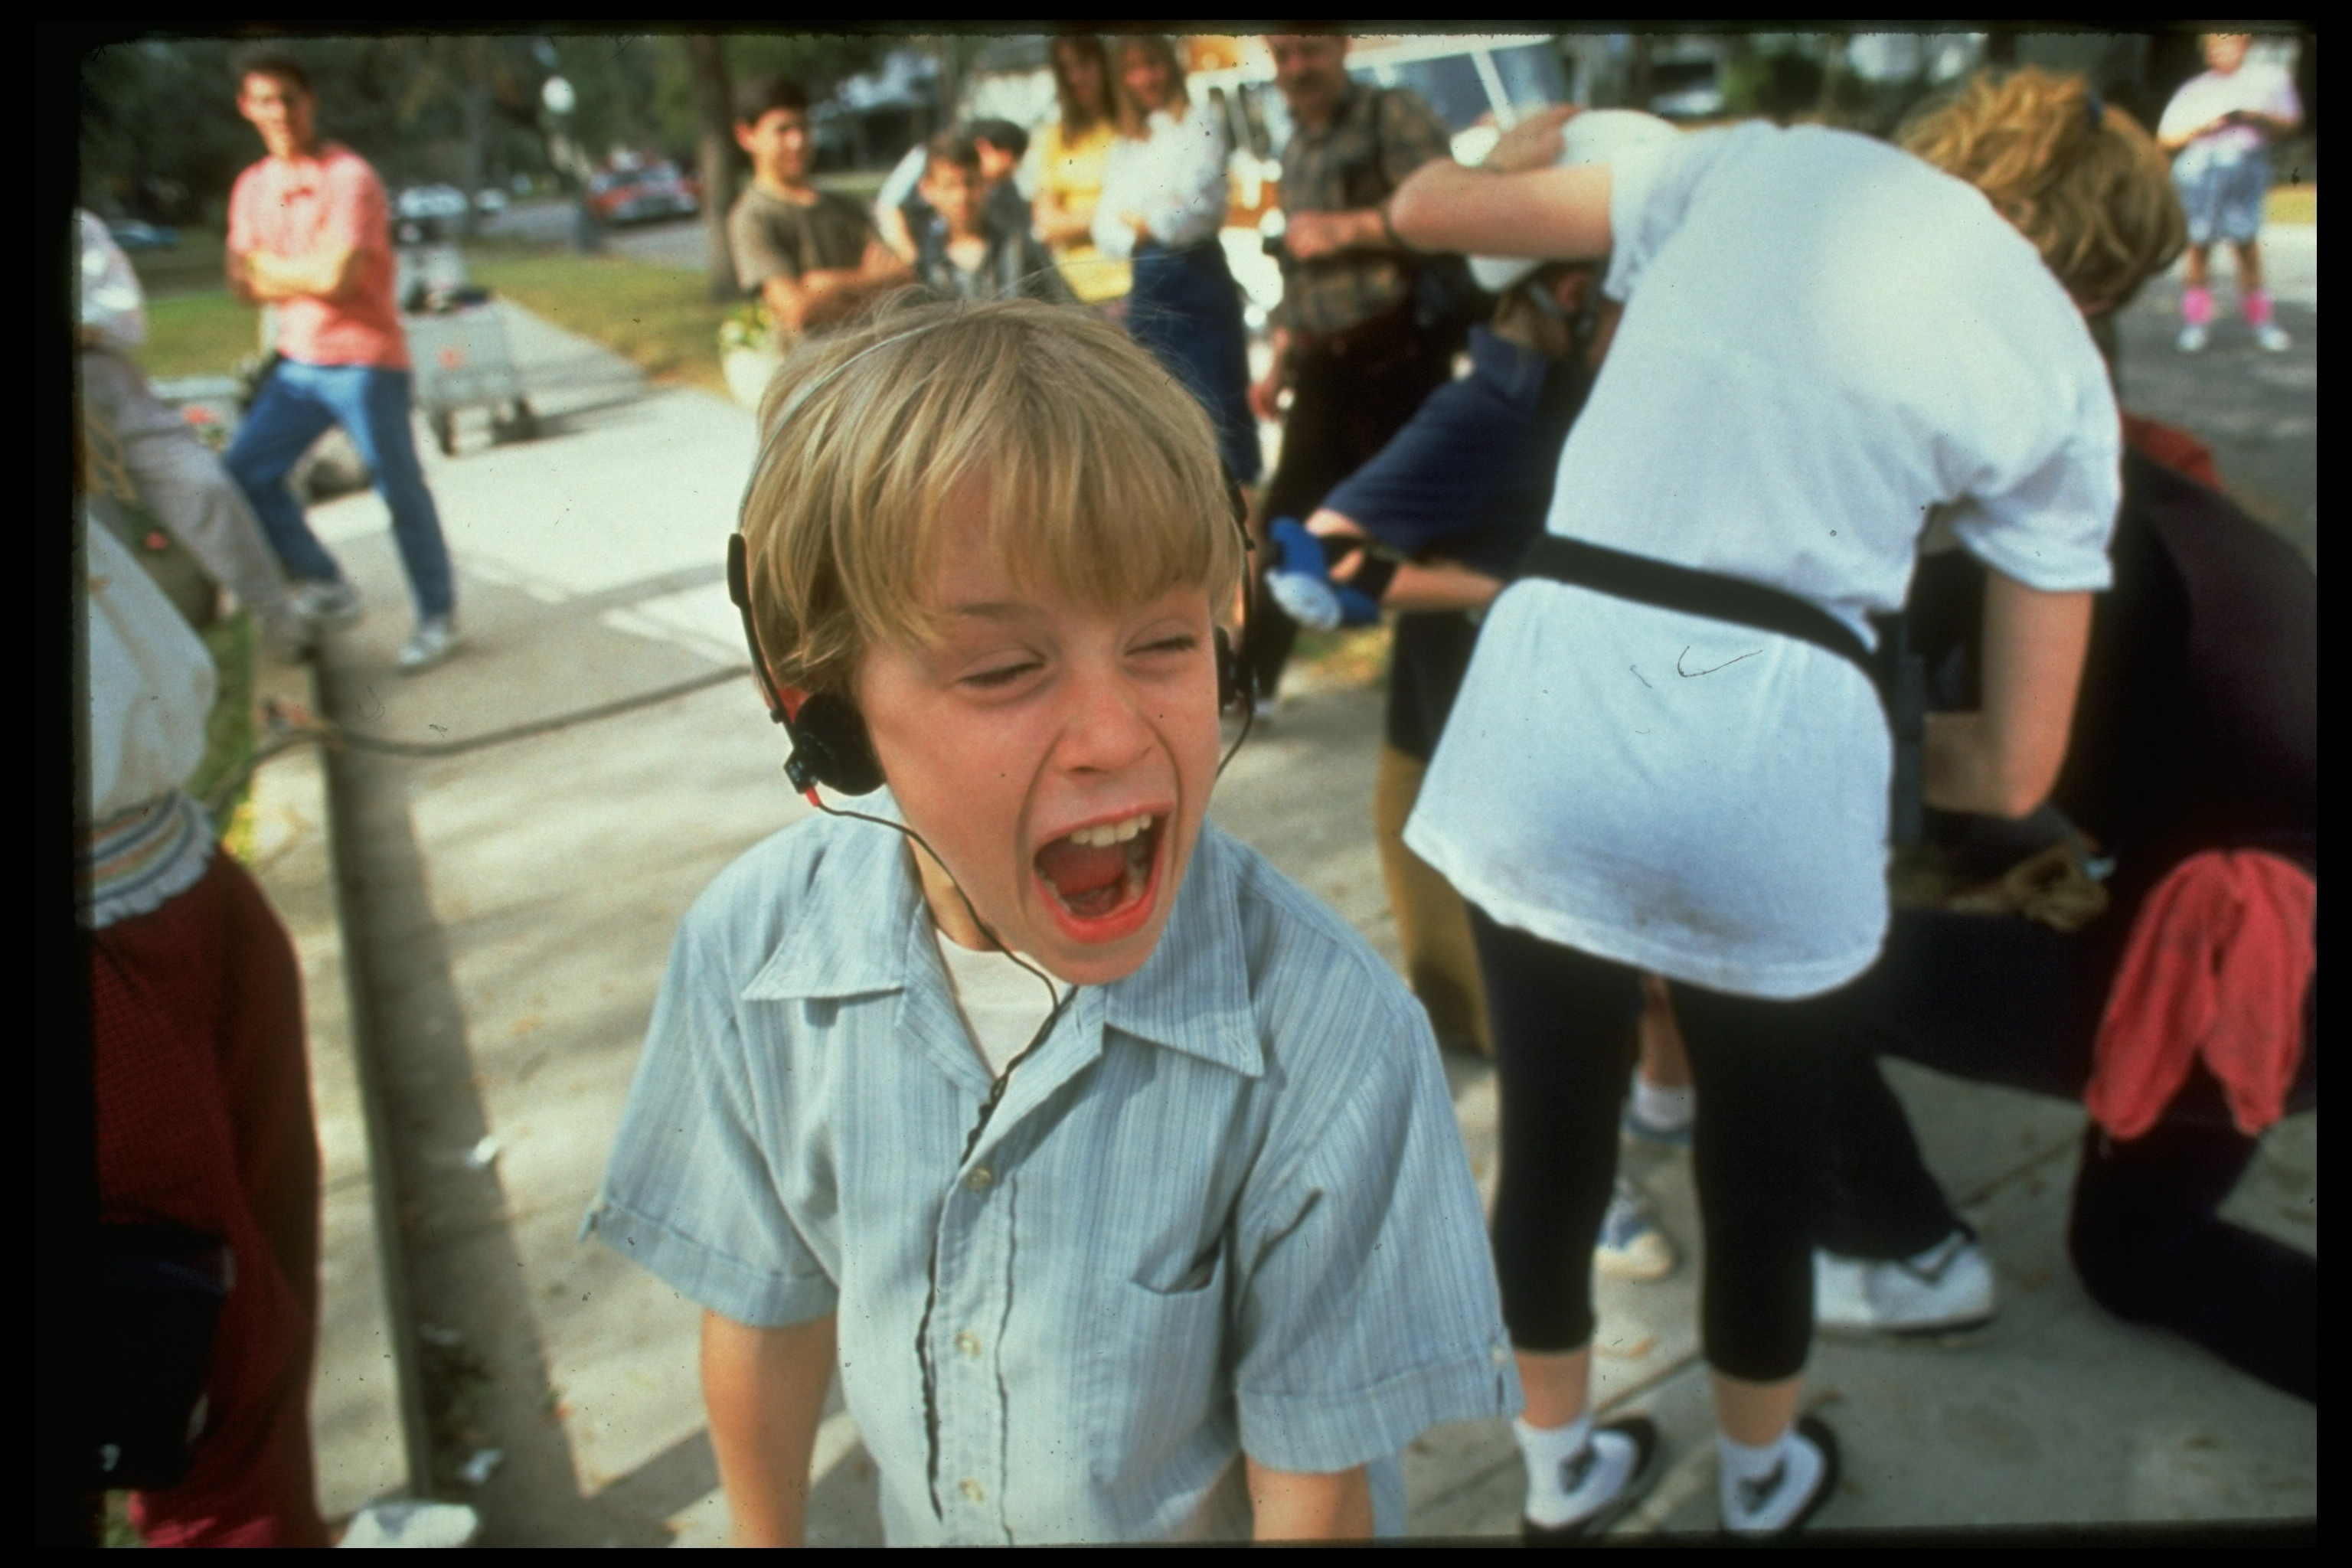 Macaulay Culkin sur le plateau de tournage en 1991 | Source : Getty Images